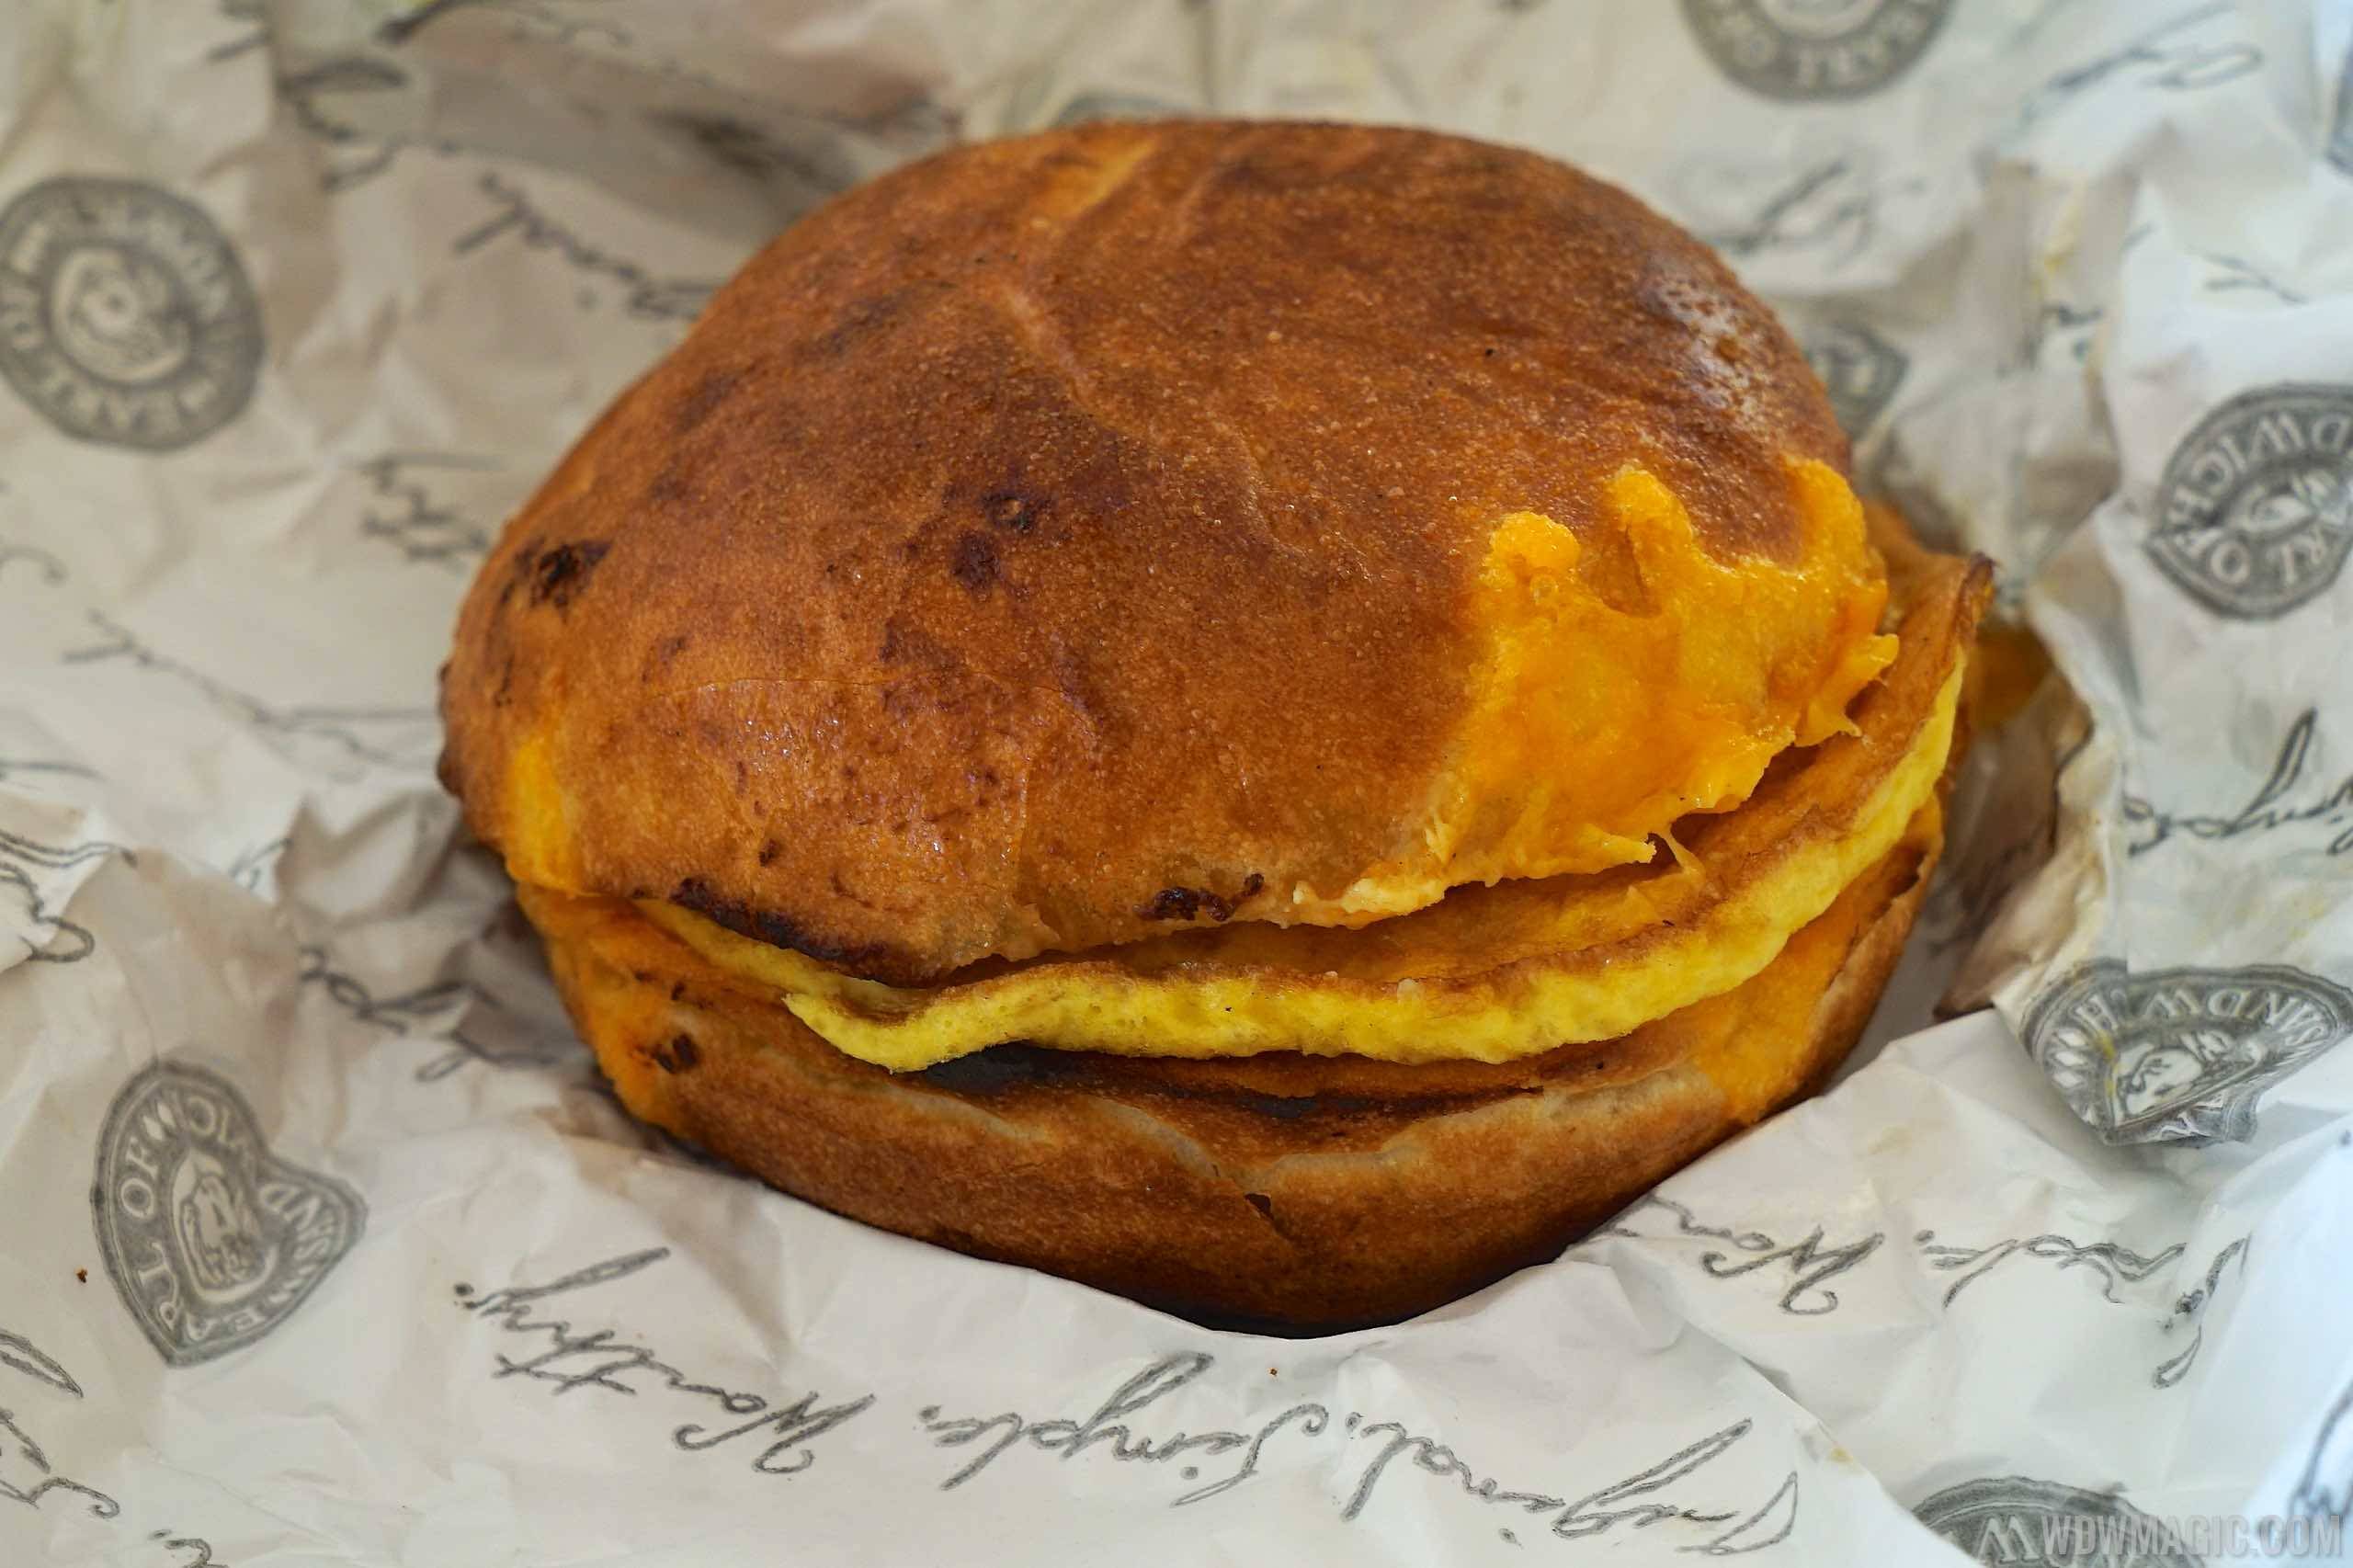 Earl of Sandwich Breakfast - Egg and Cheese Sandwich